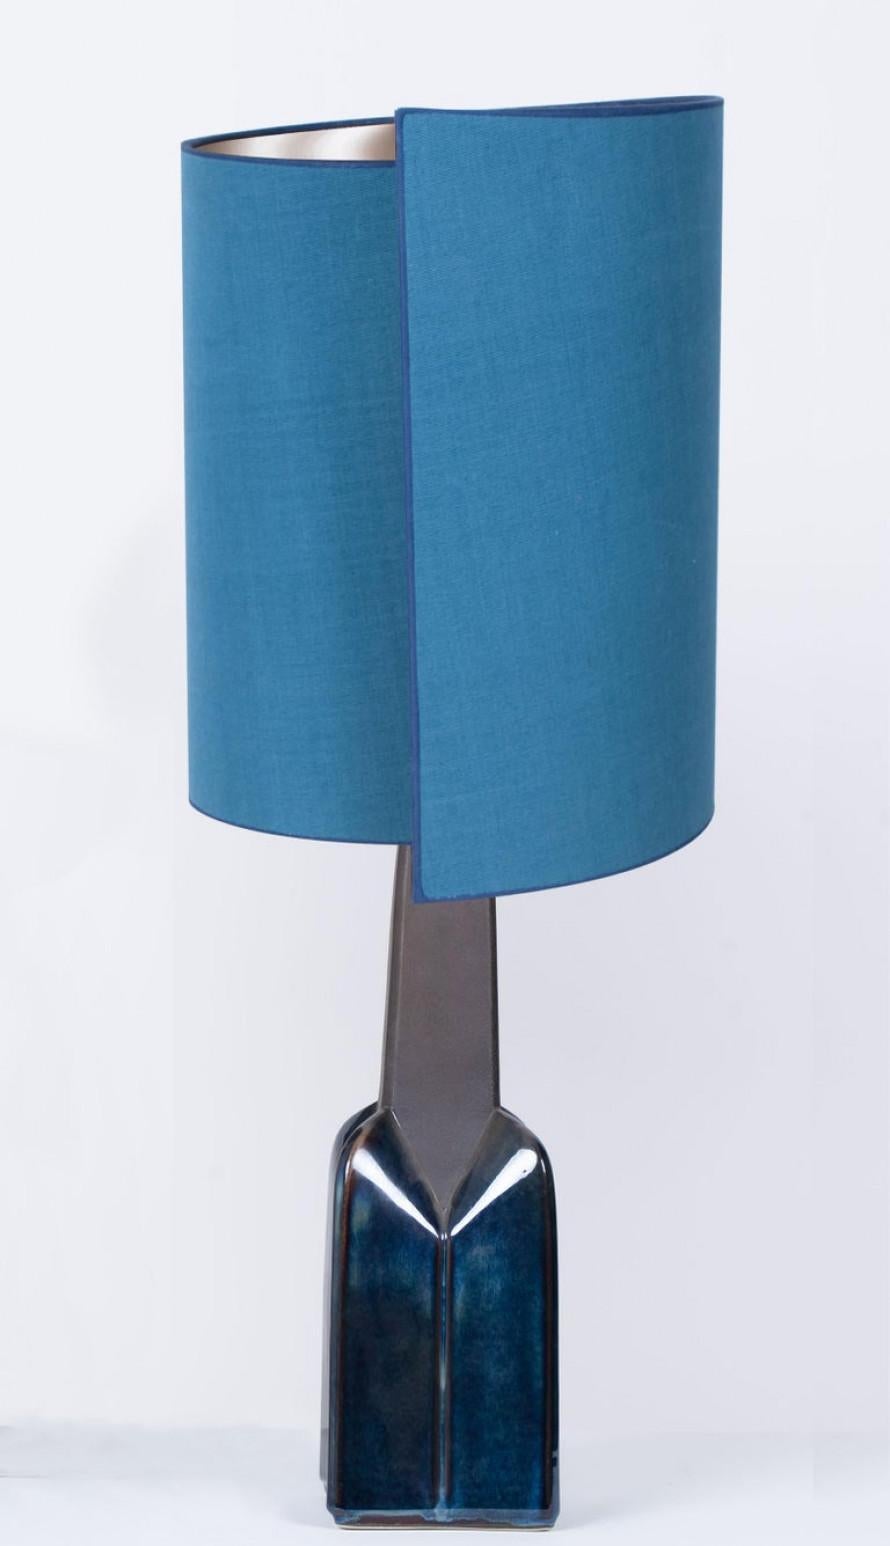 Keramische Tischlampe von Soholm, Dänemark, 1960er Jahre. Dieses hochwertige skulpturale Stück besteht aus handgefertigter Keramik in blauen oder grauen Tönen mit einer Kombination aus trockener und glasierter Oberfläche. Mit einem neuen